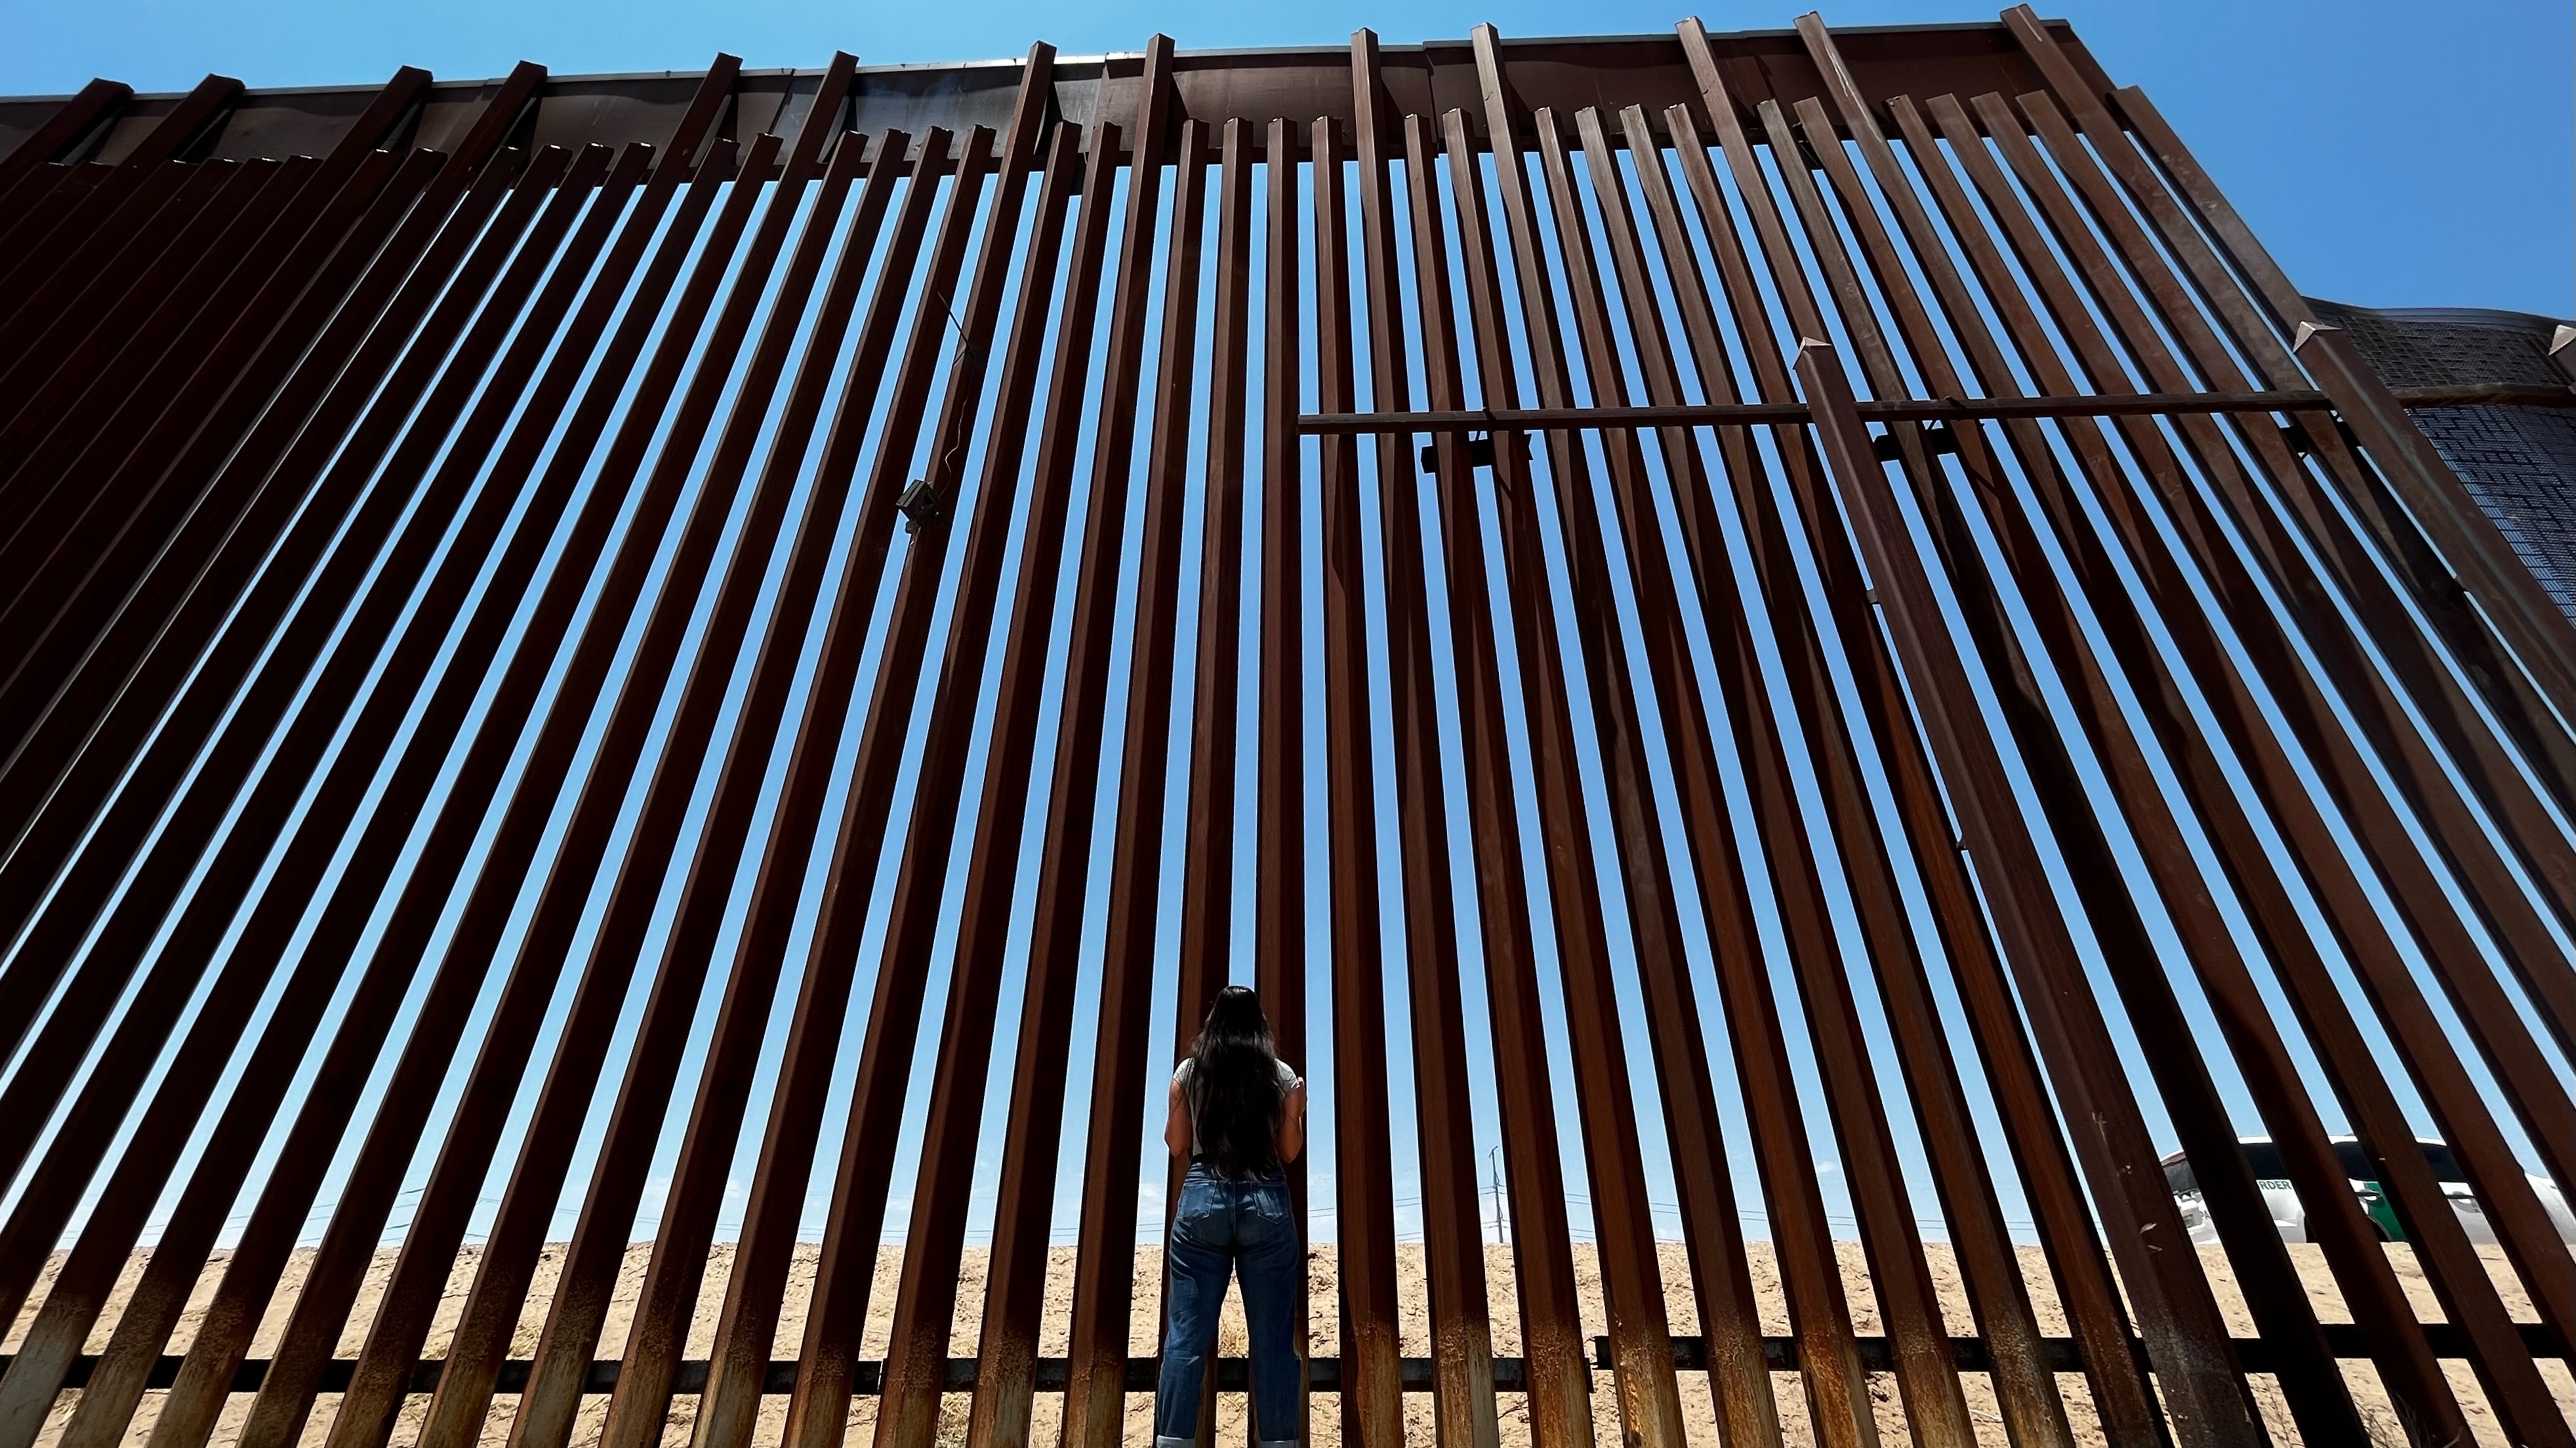 The border wall in San Elizario, Texas, where Vianey Rueda grew up.